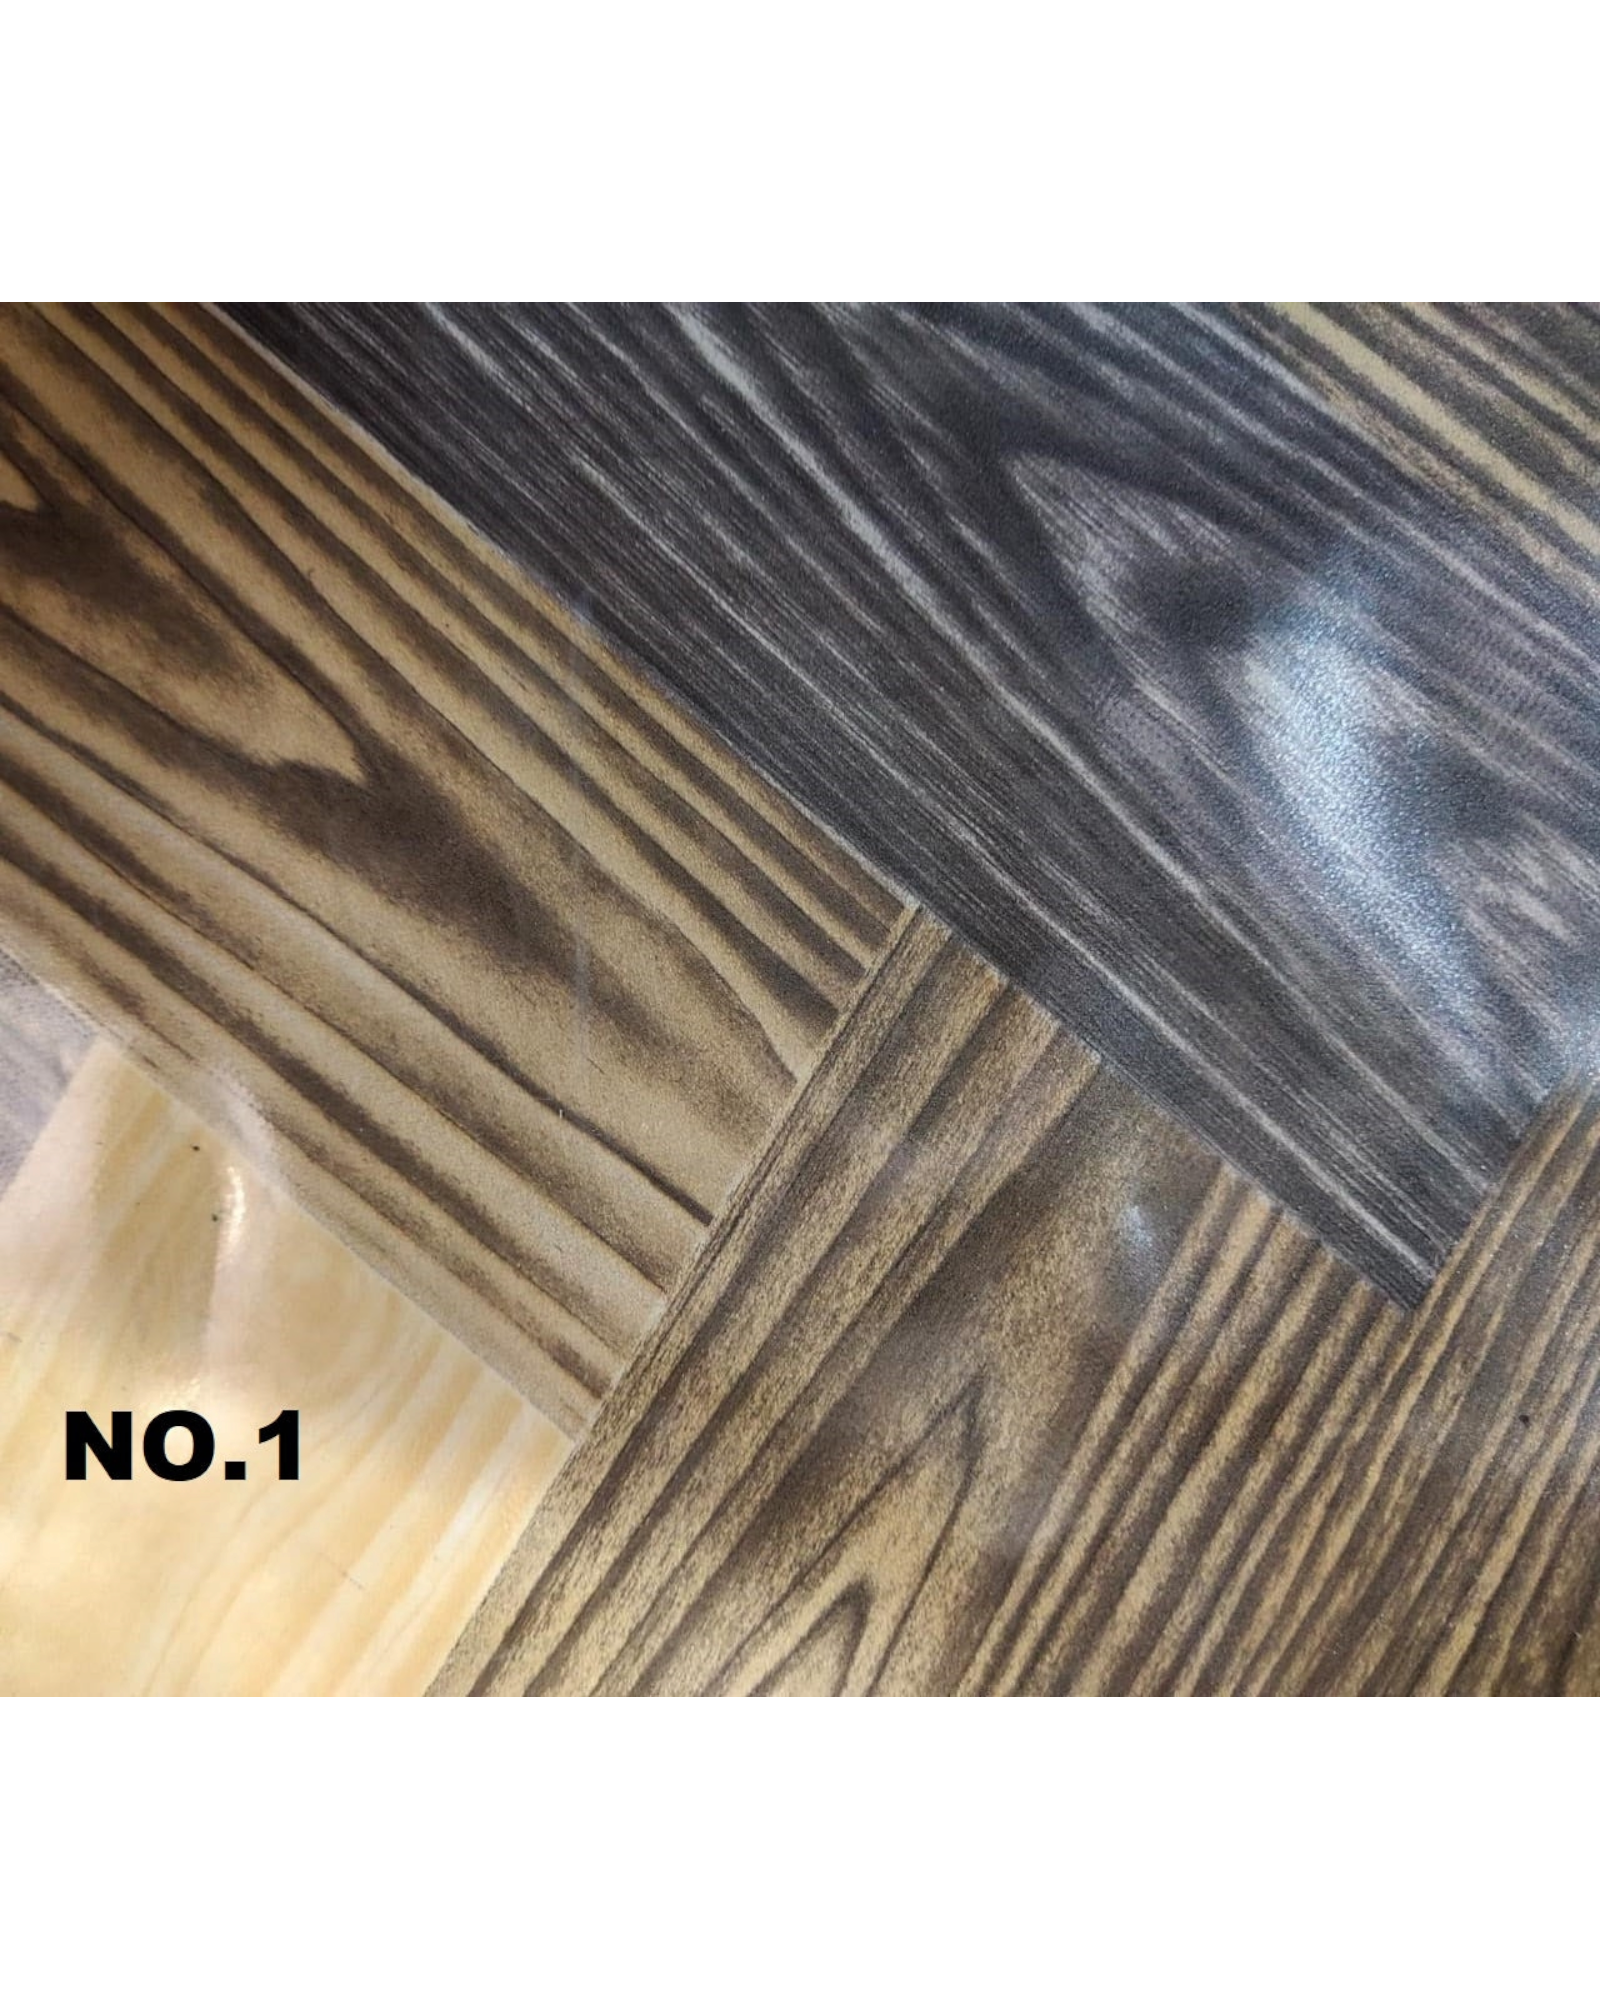 Vinyl Flooring Premium 1.83x1m Sheeting